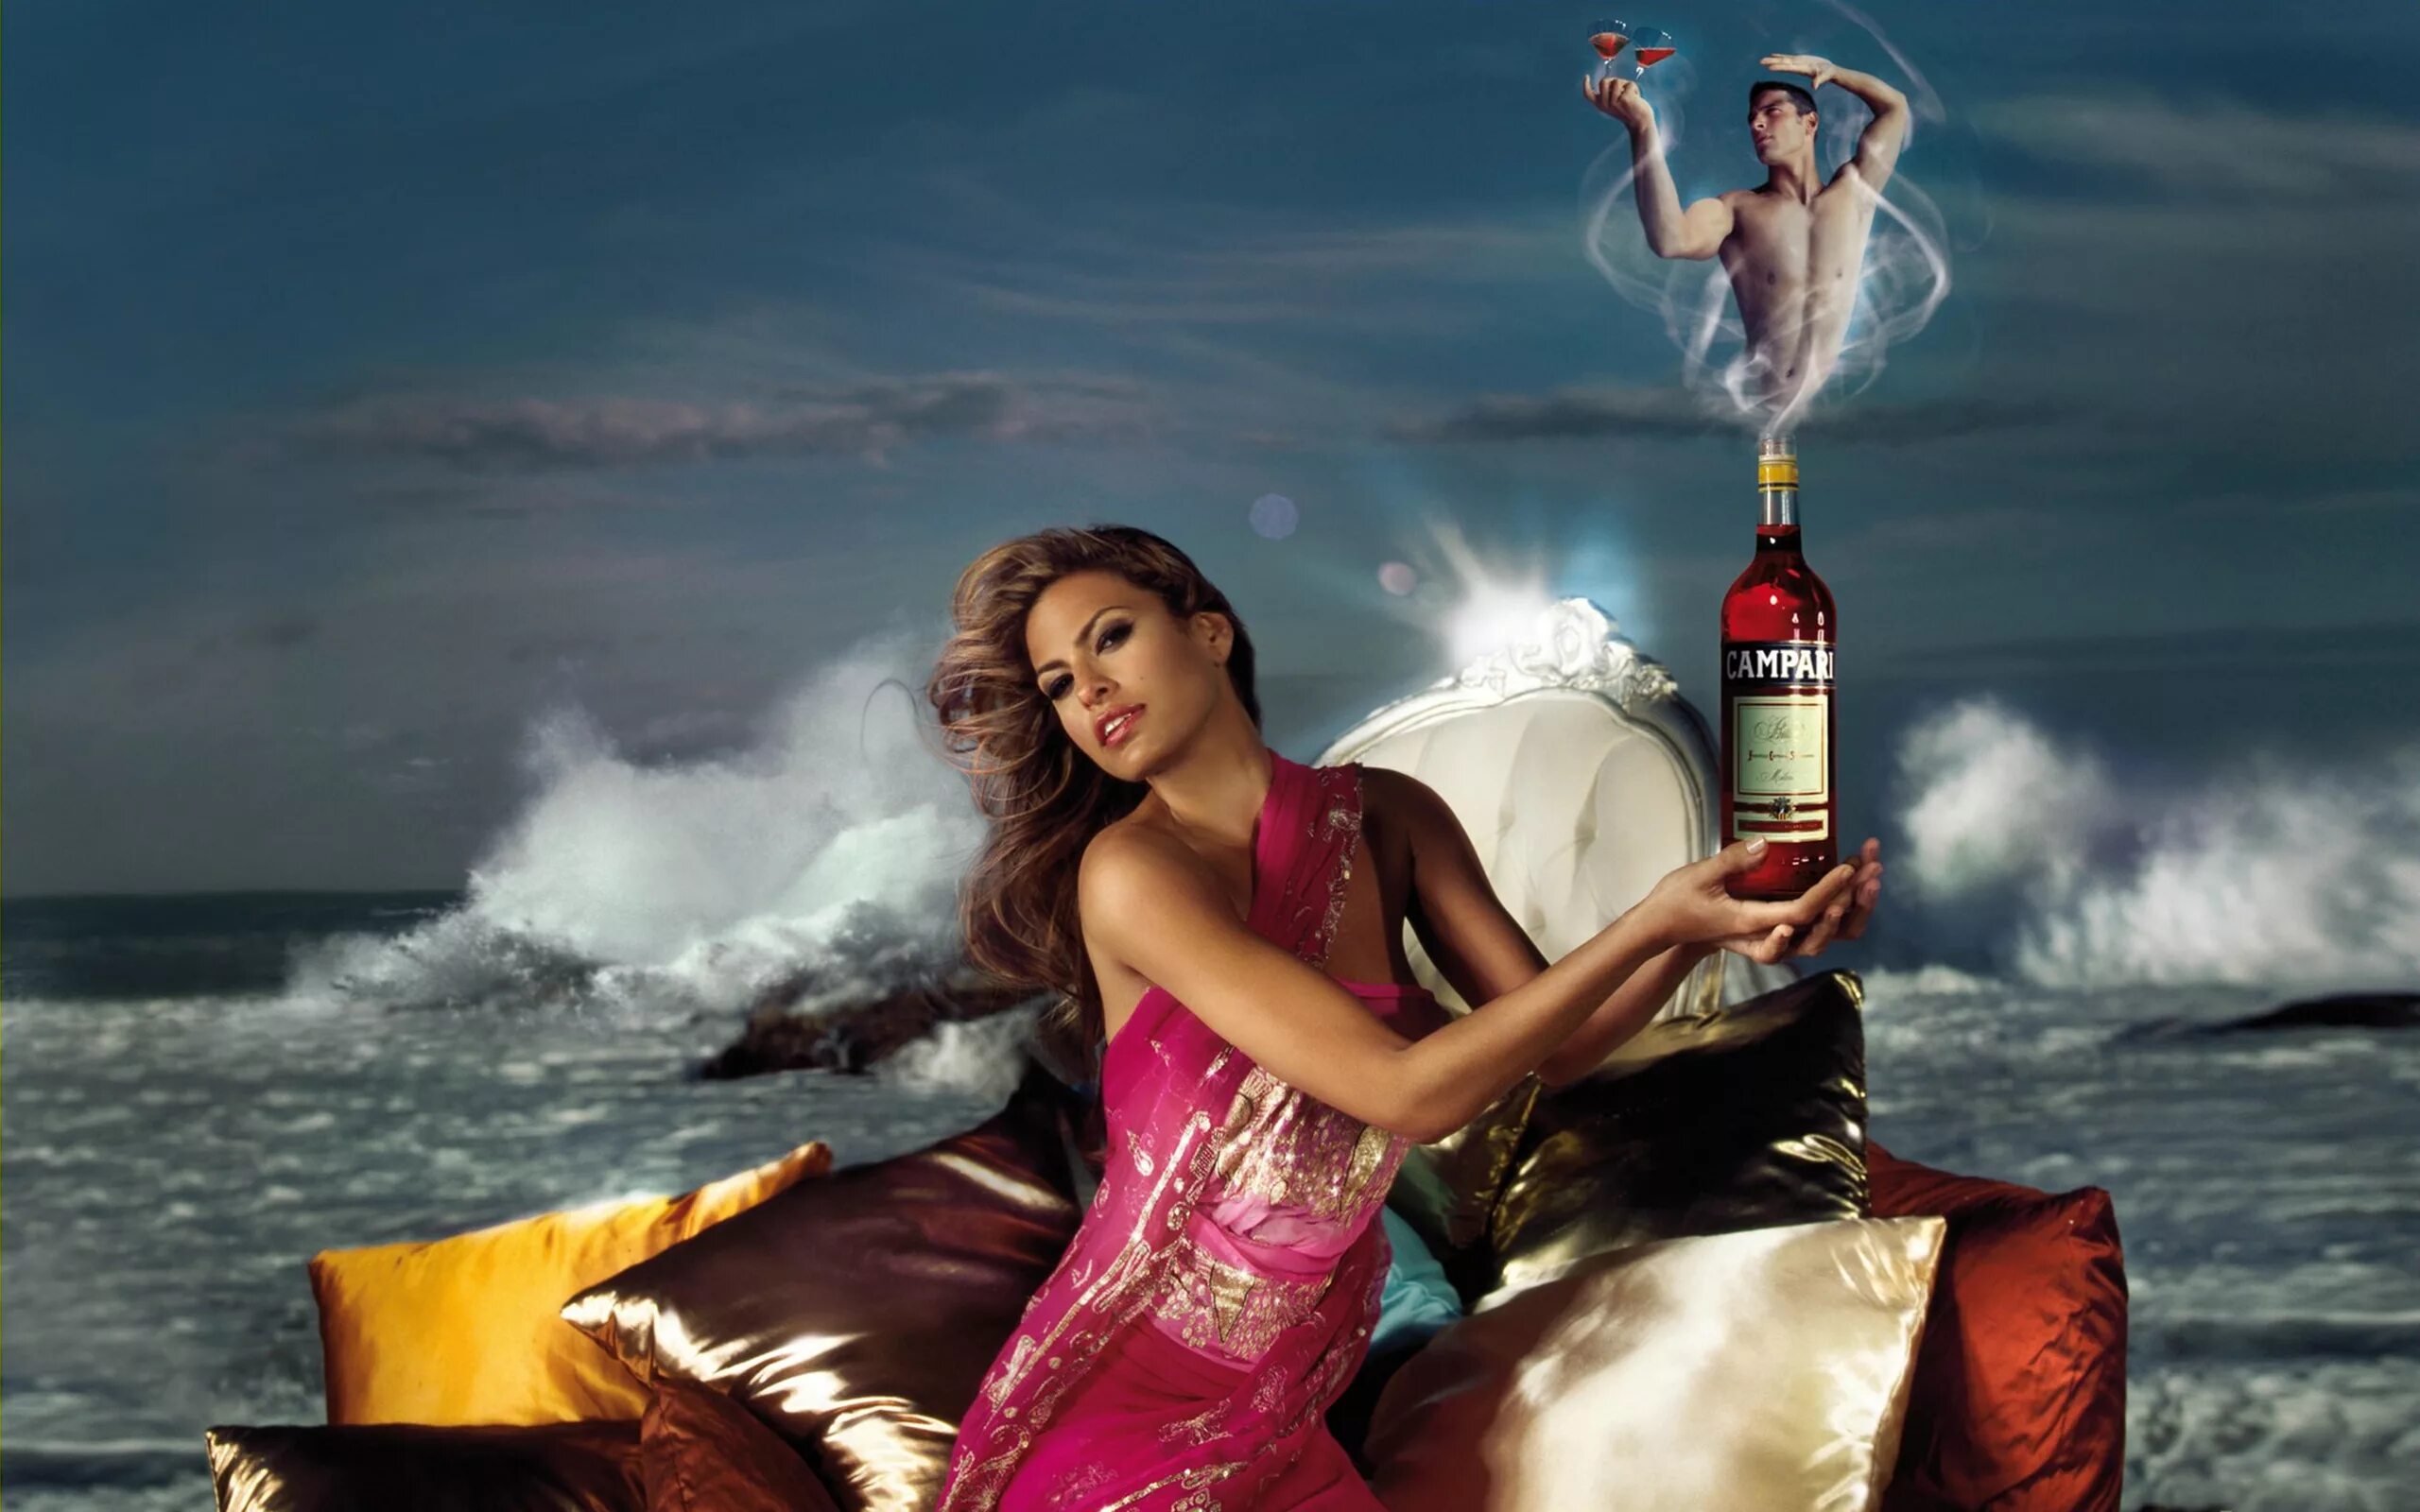 Девушка пьет шампанское. Реклама Кампари с Евой Мендес.